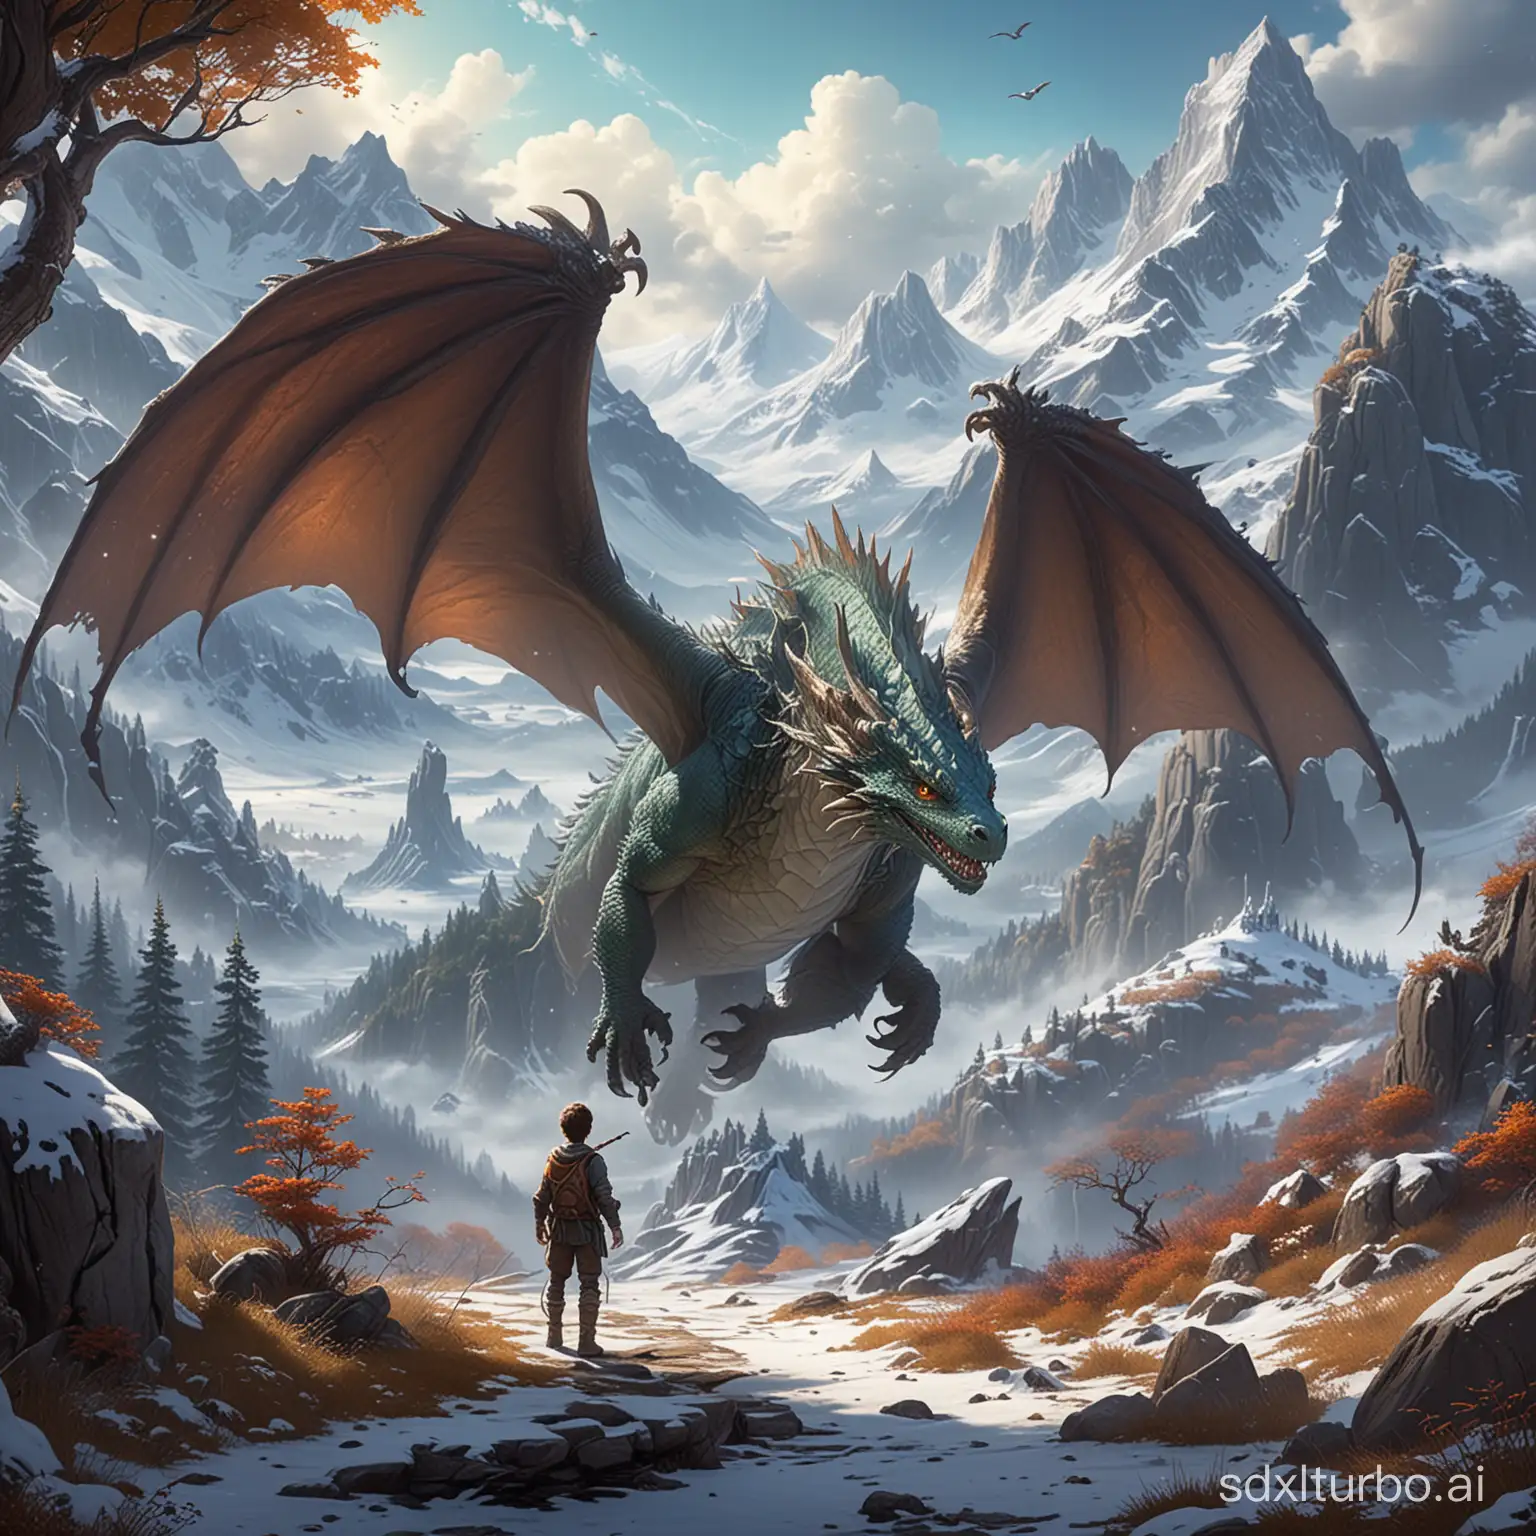 escenario de Un mundo mágico y misterioso lleno de criaturas fantásticas y paisajes impresionantes, como bosques encantados y montañas nevadas. con un chico y un dragon diminuto como amigo
